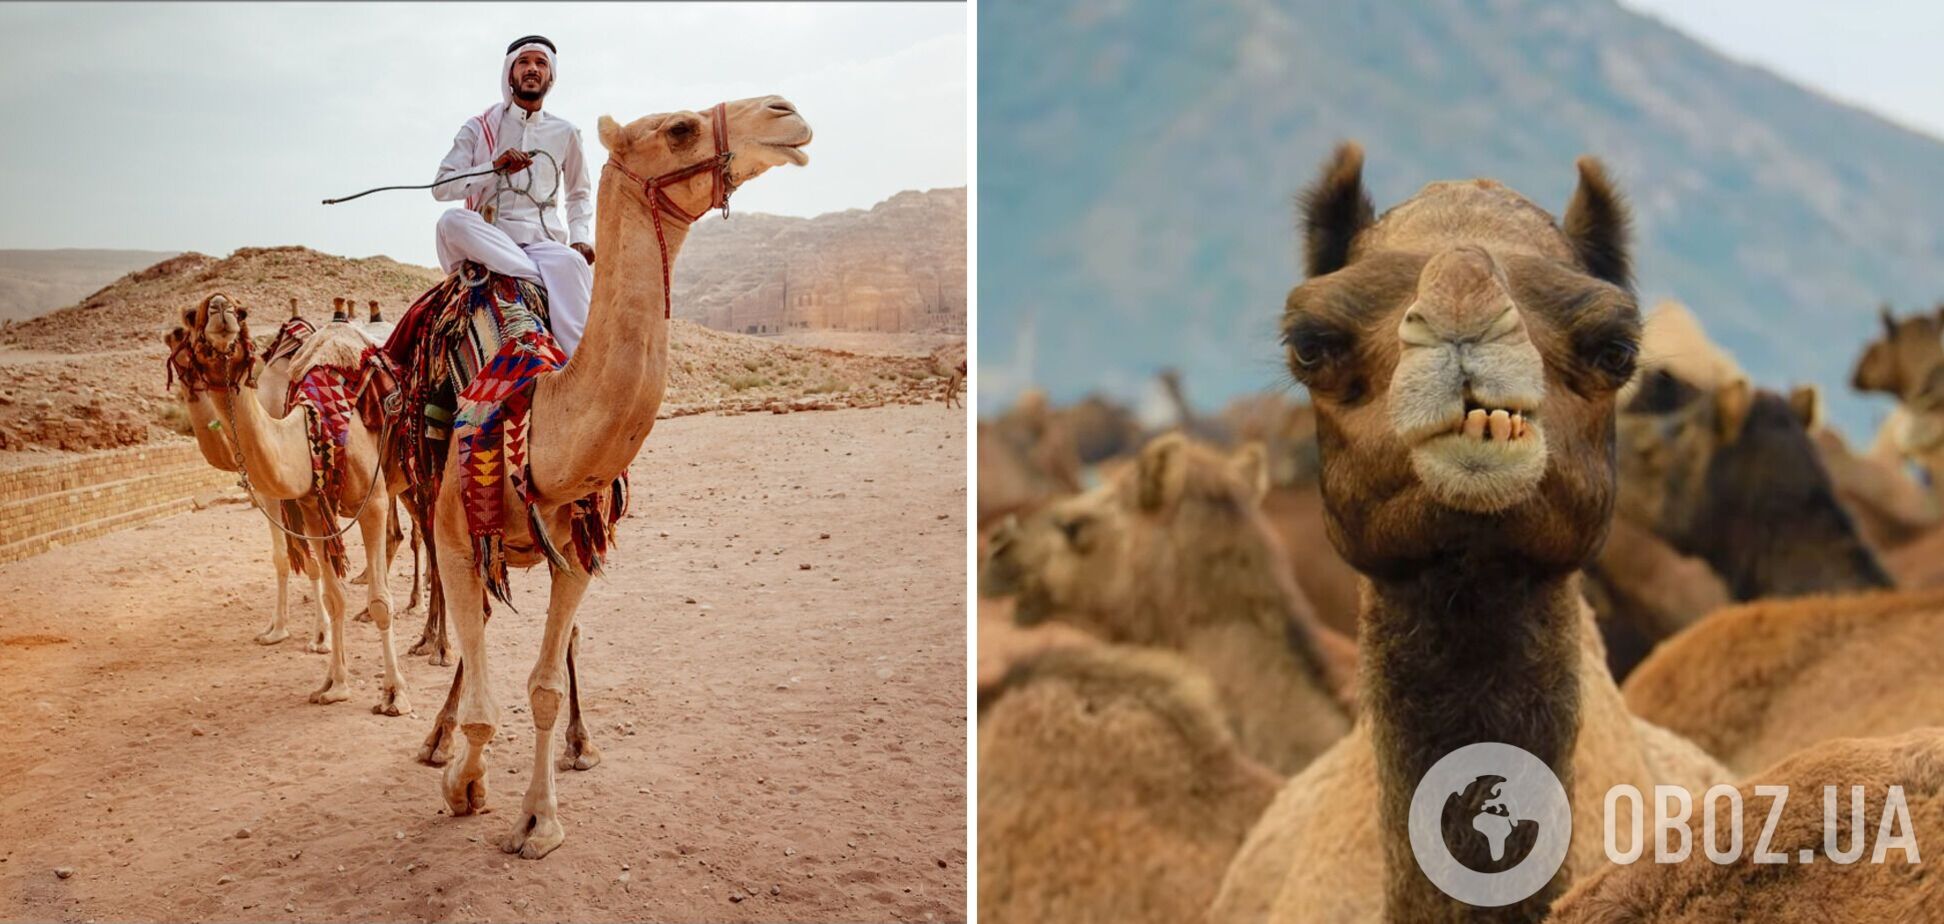 40 верблюдов сняли с конкурса красоты в Саудовской Аравии из-за ботокса. Детали скандала